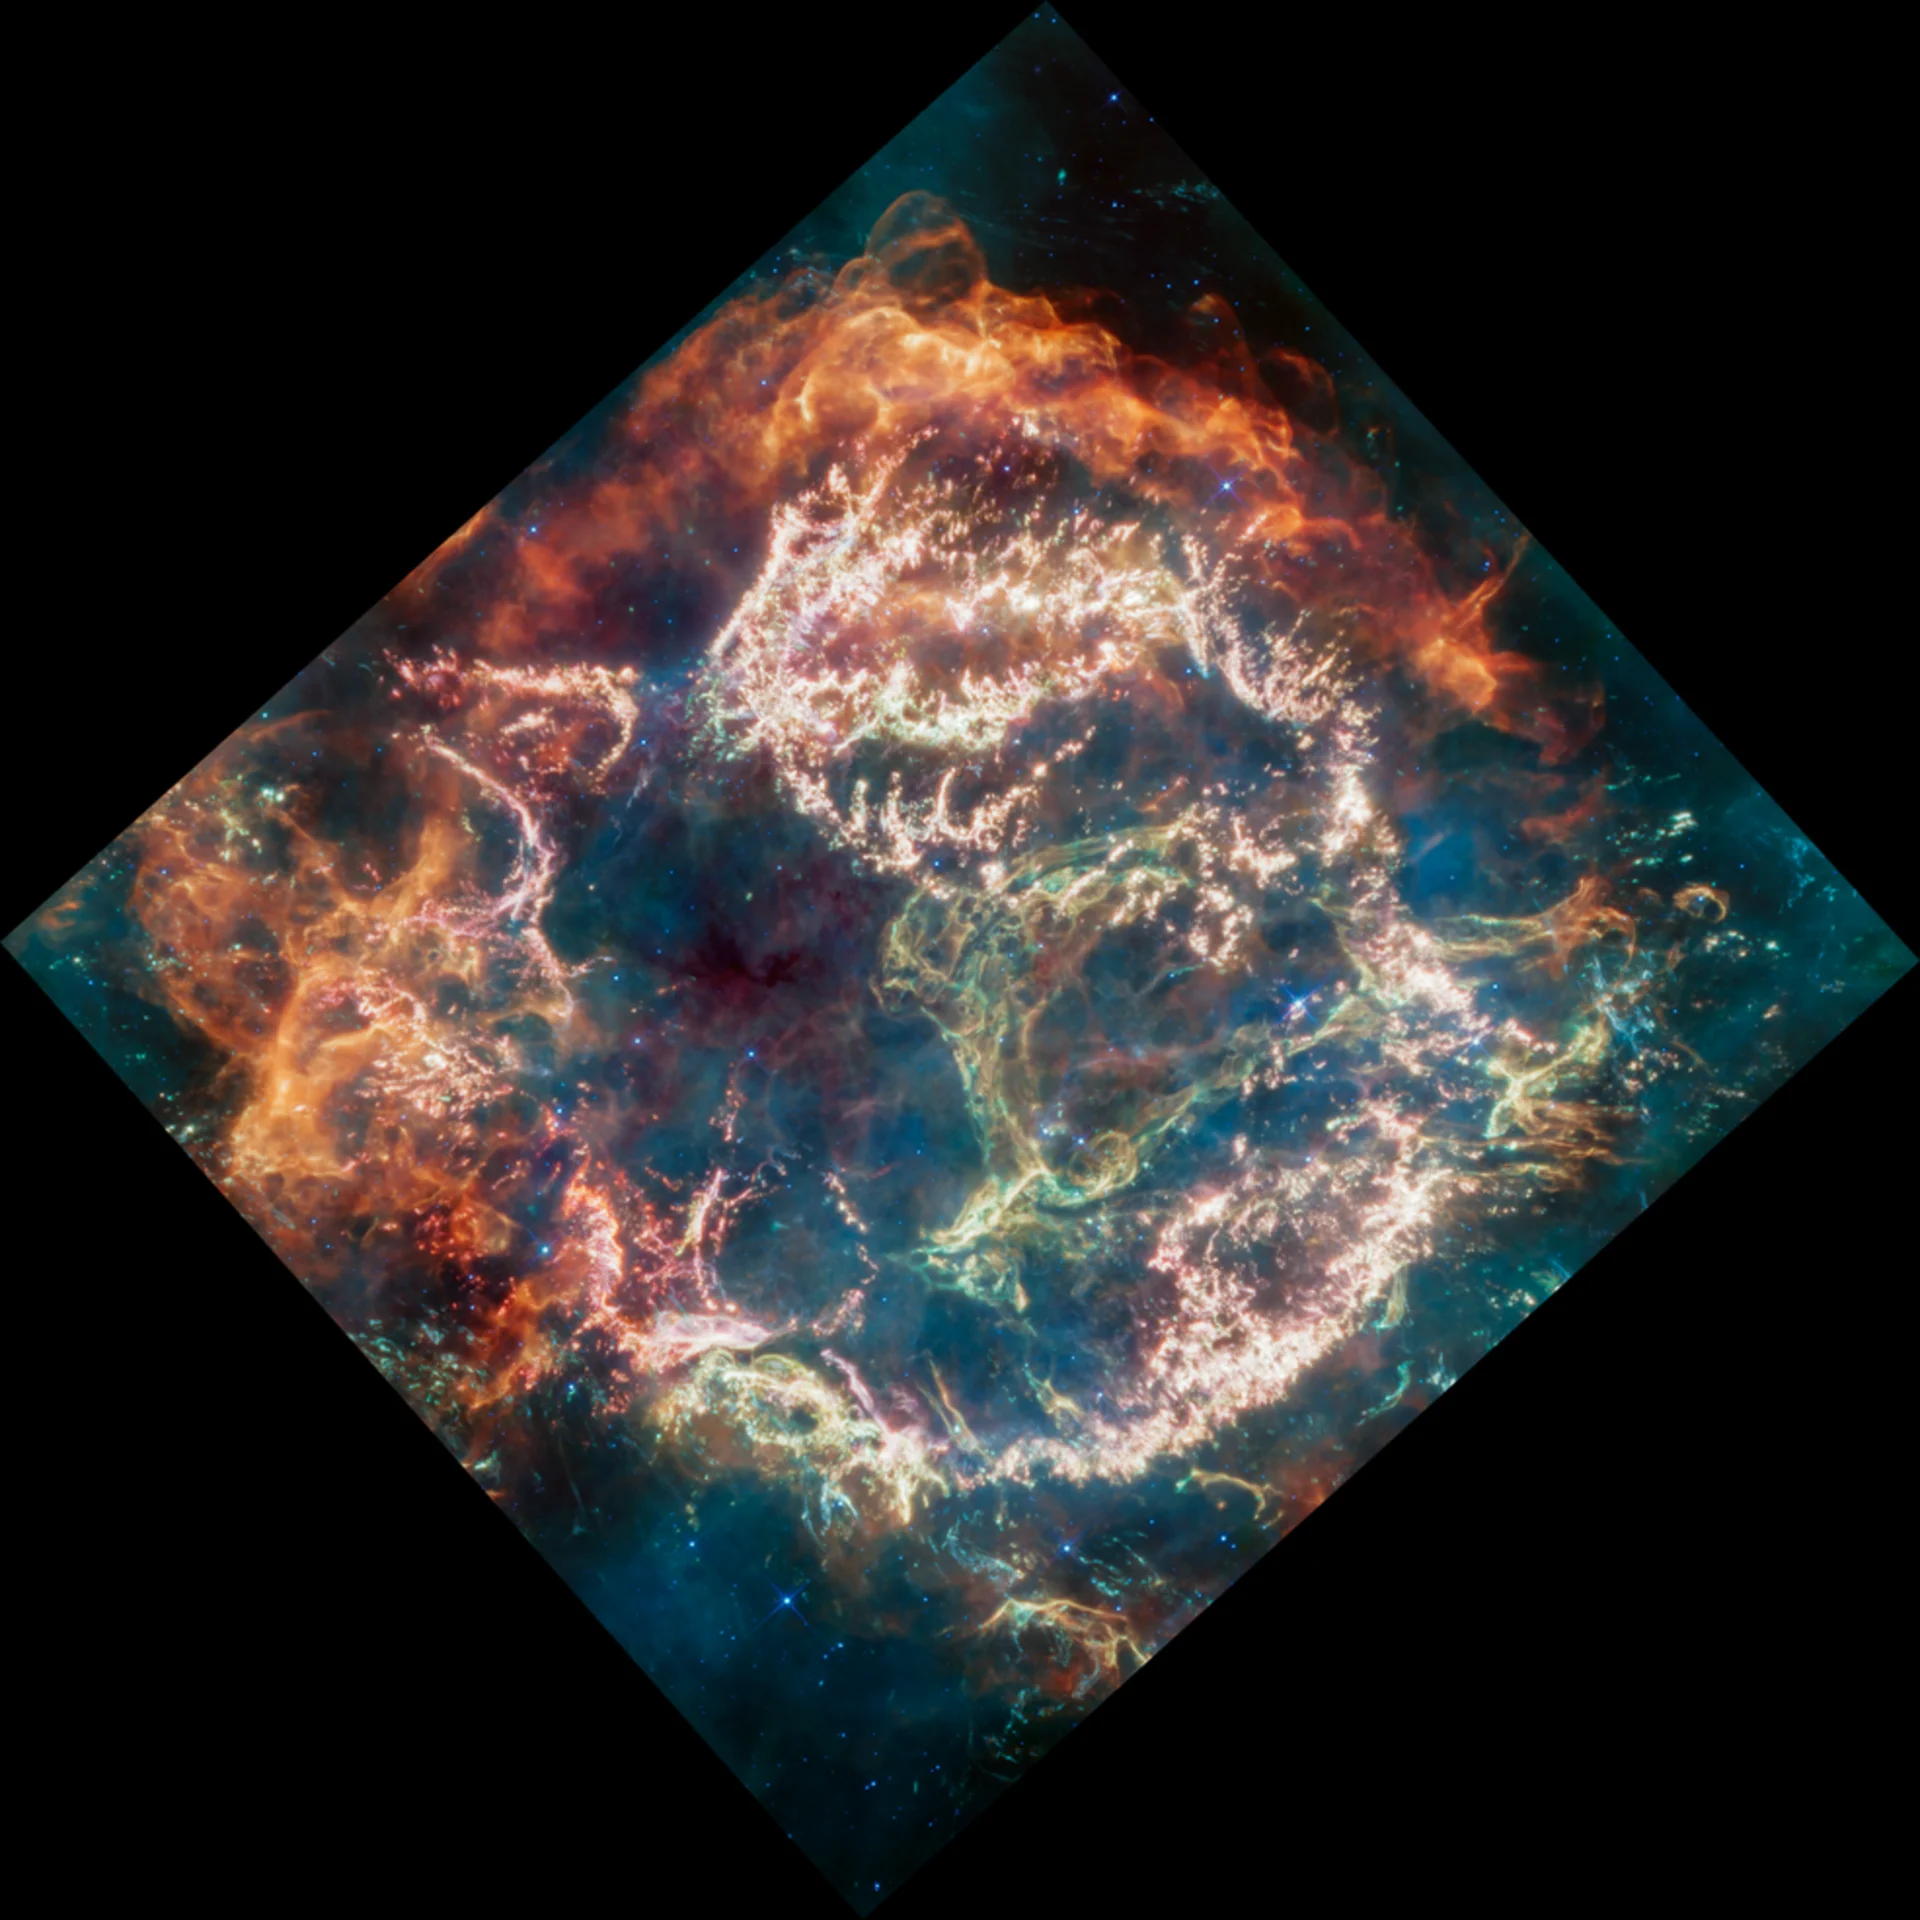 Des nouvelles images d'une supernova mystifient les astronomes